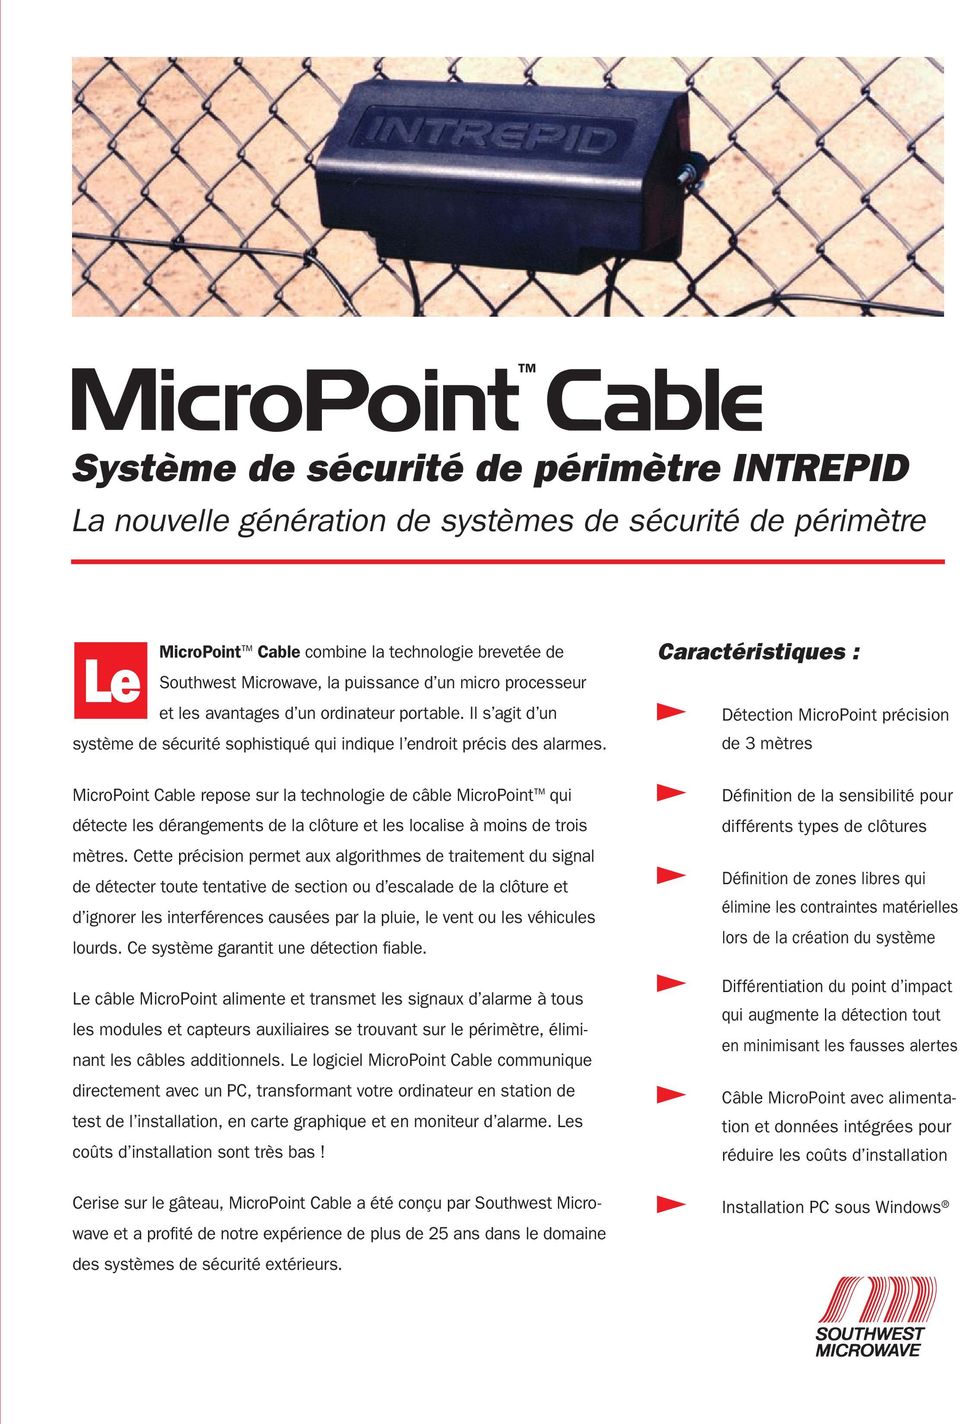 MicroPoint Cable repose sur la technologie de câble MicroPoint qui détecte les dérangements de la clôture et les localise à moins de trois mètres.